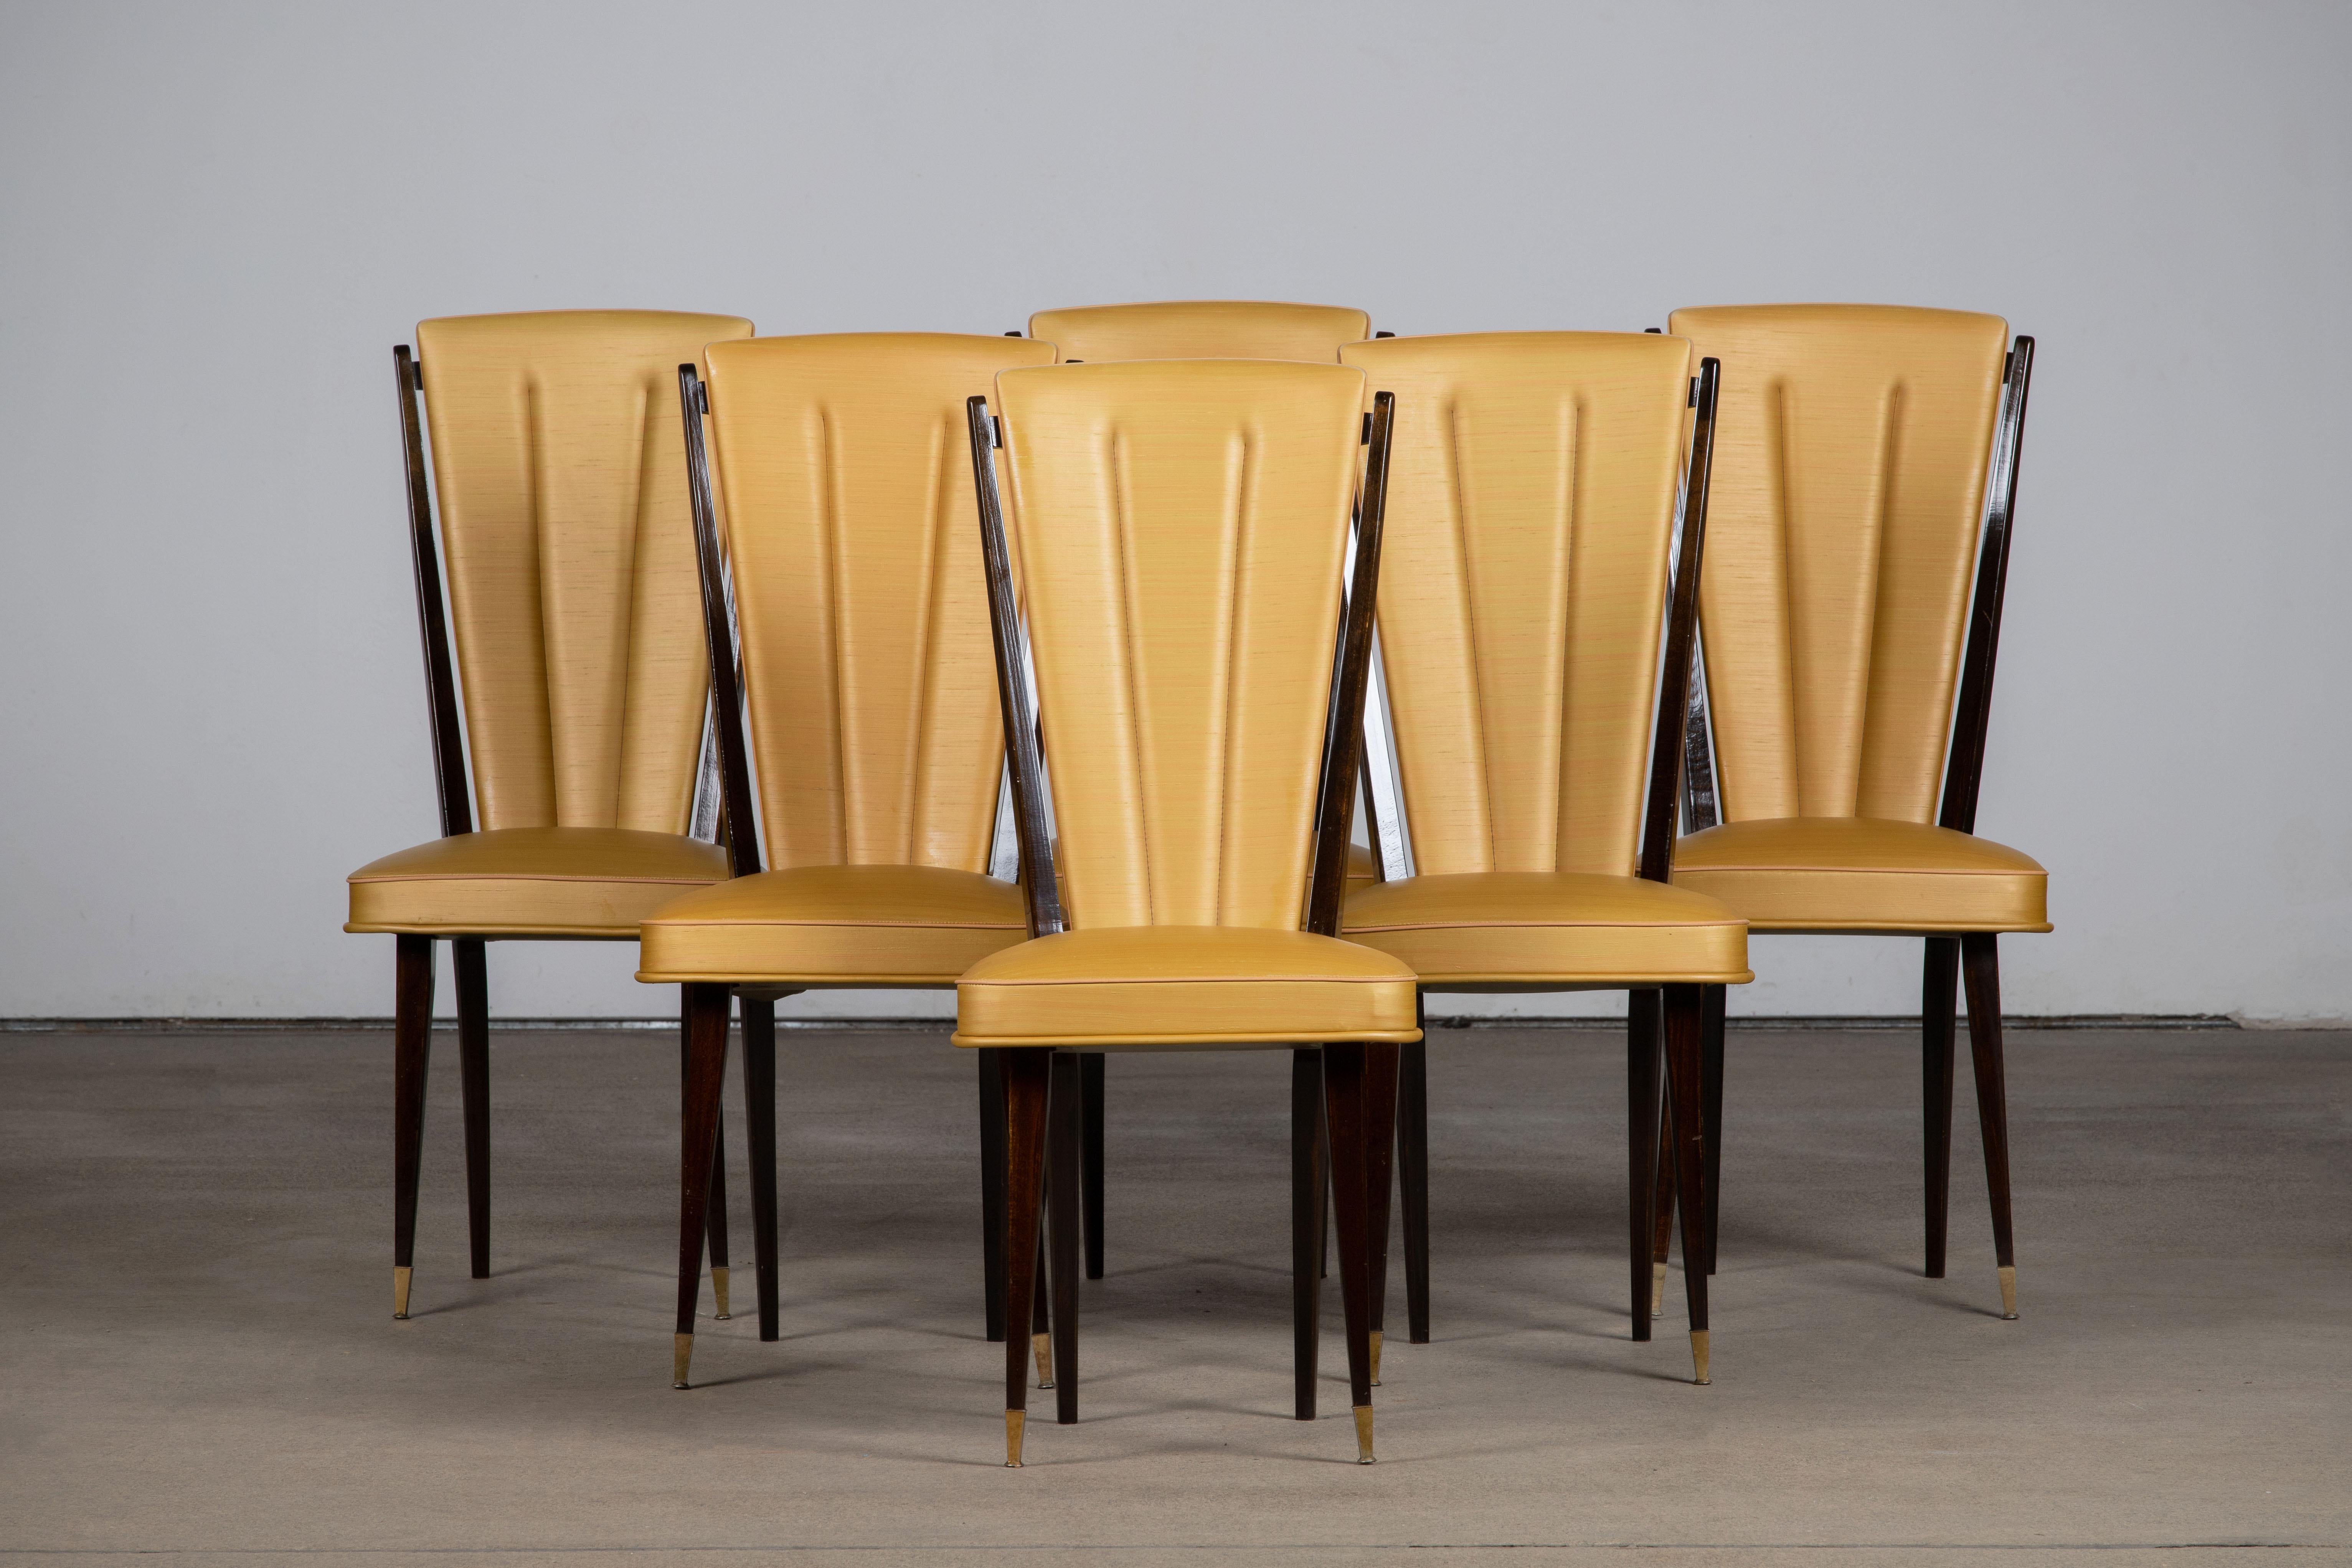 Satz von sechs gepolsterten Stühlen mit hoher Rückenlehne, bezogen mit gelbem Vynil, mit traditionellen französischen Designelementen in einem tiefen Eichenholzdekor.

Im Stil von René Prou, Albert-Lucien Guenot, Pomone, André Arbus, Baptistin